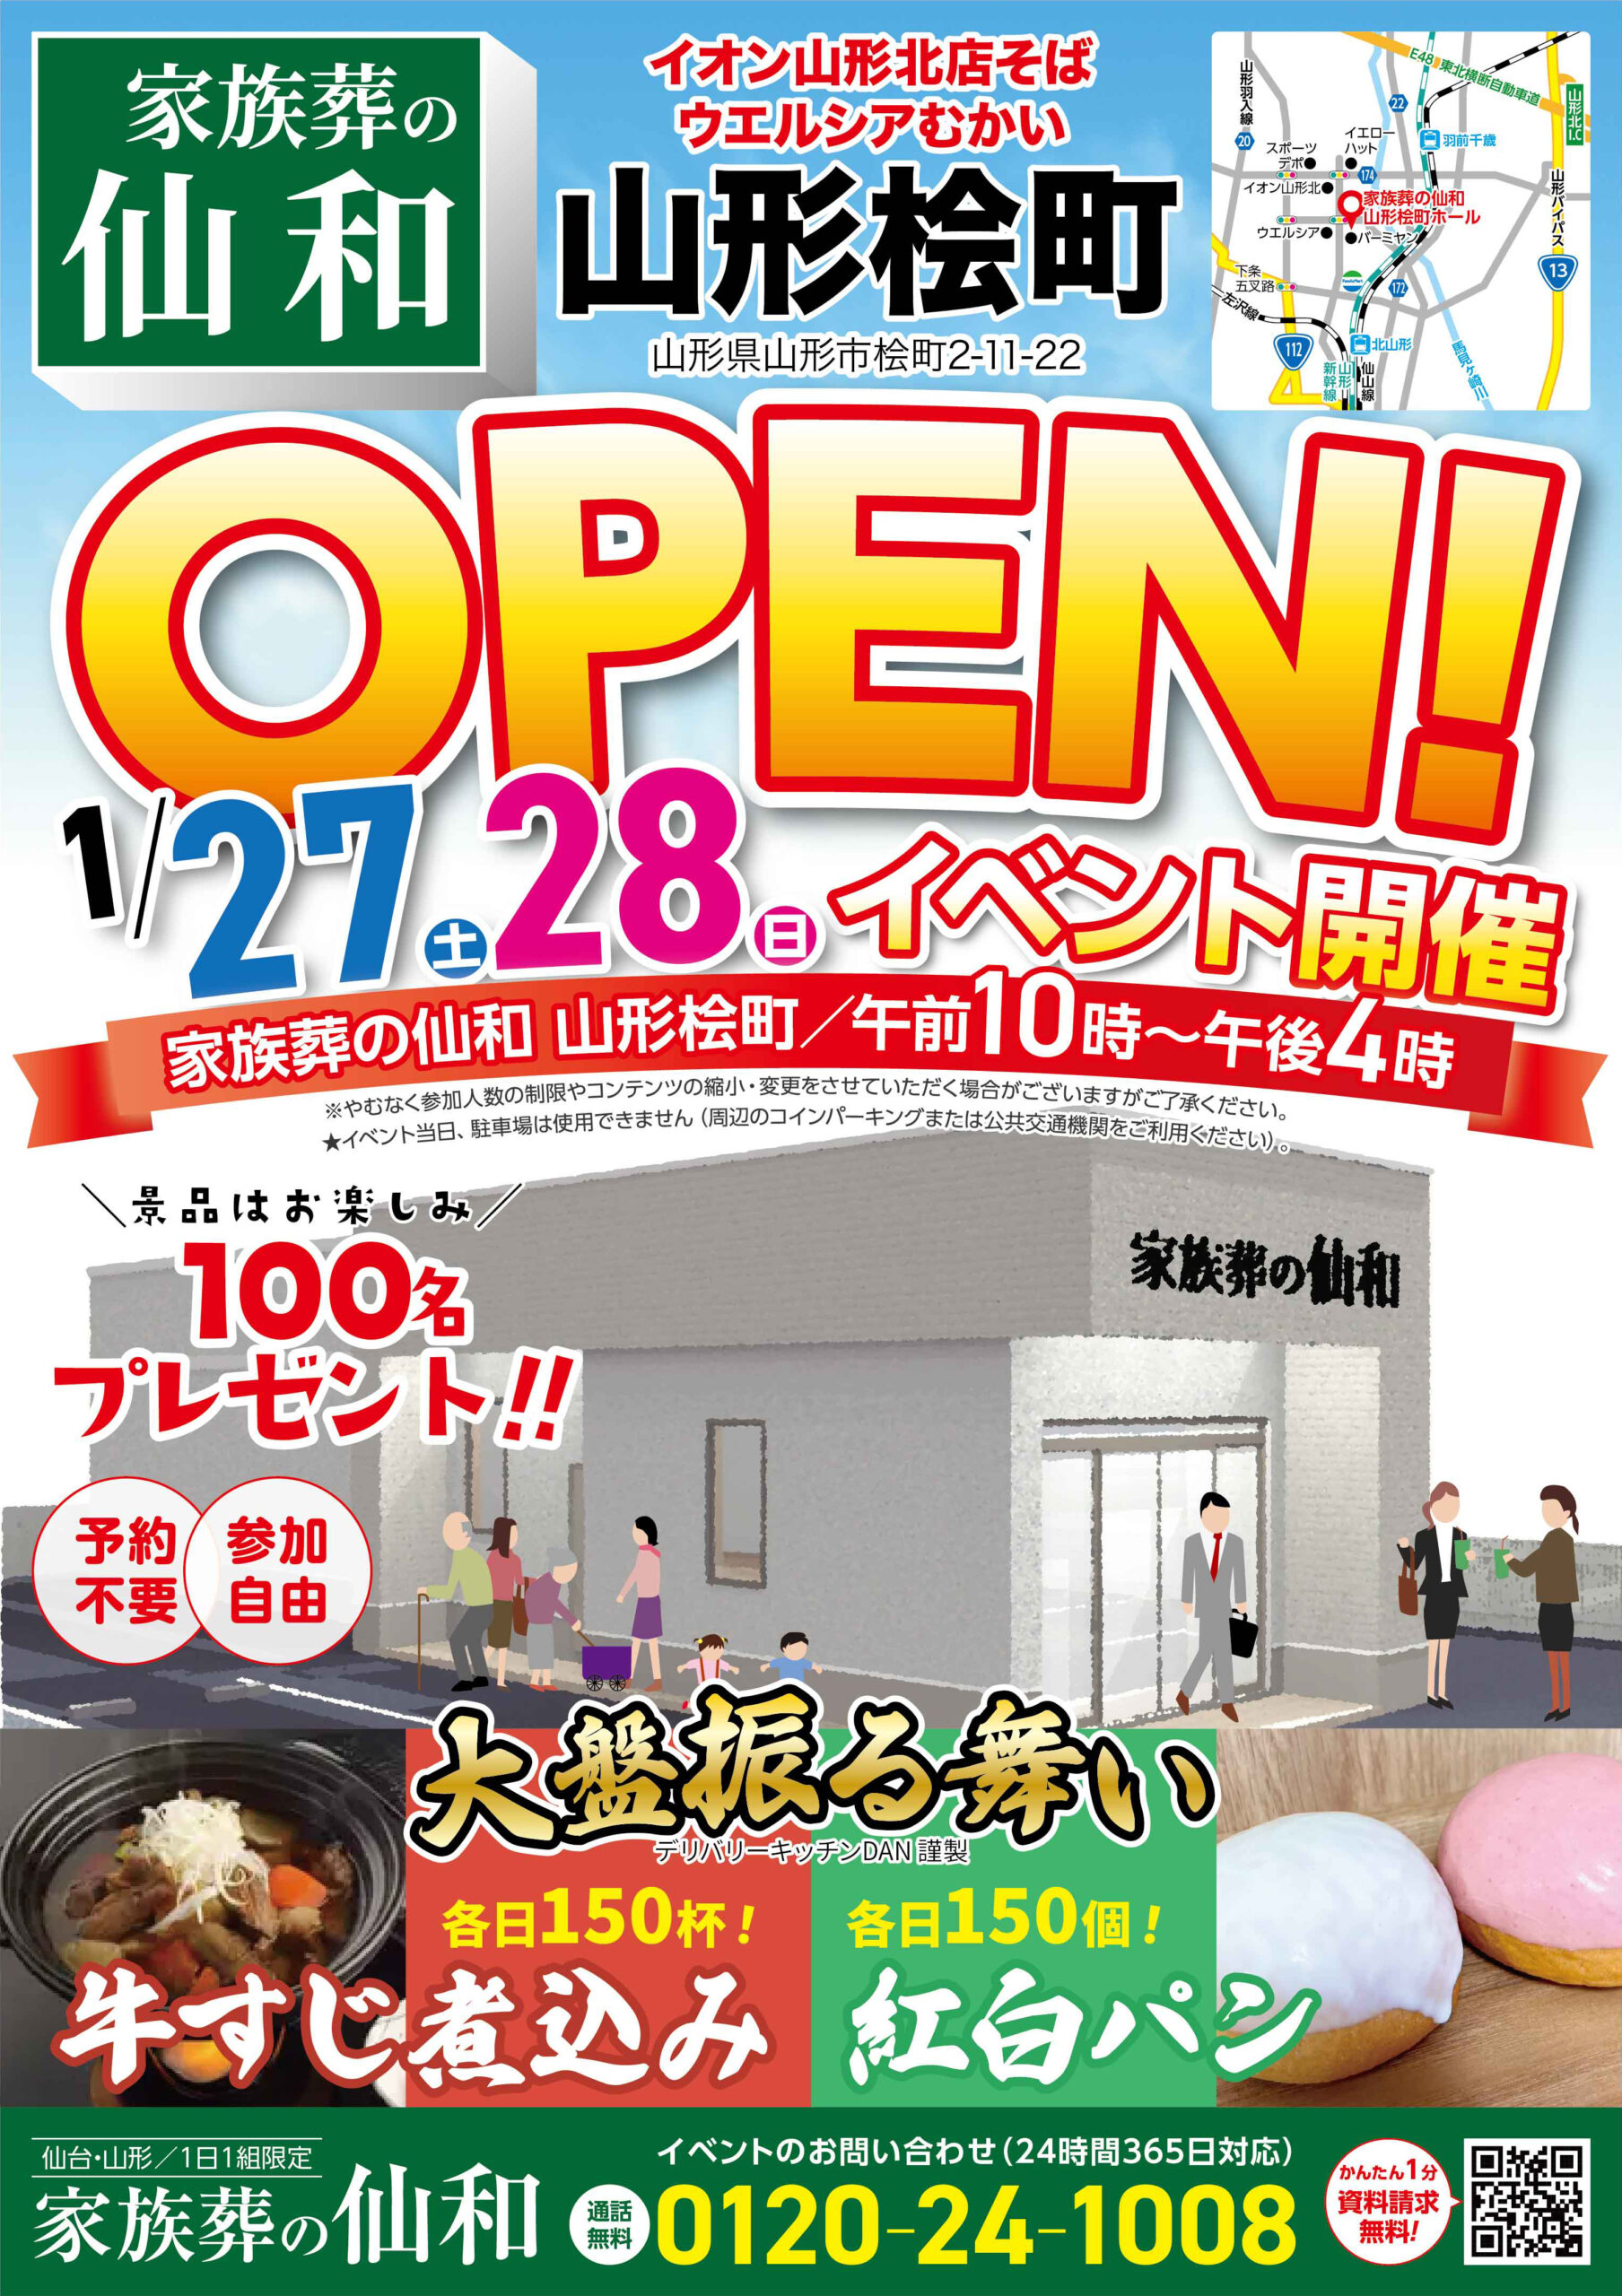 1月27日(土)28日(日)に山形桧町でオープンイベント開催！のイメージ画像